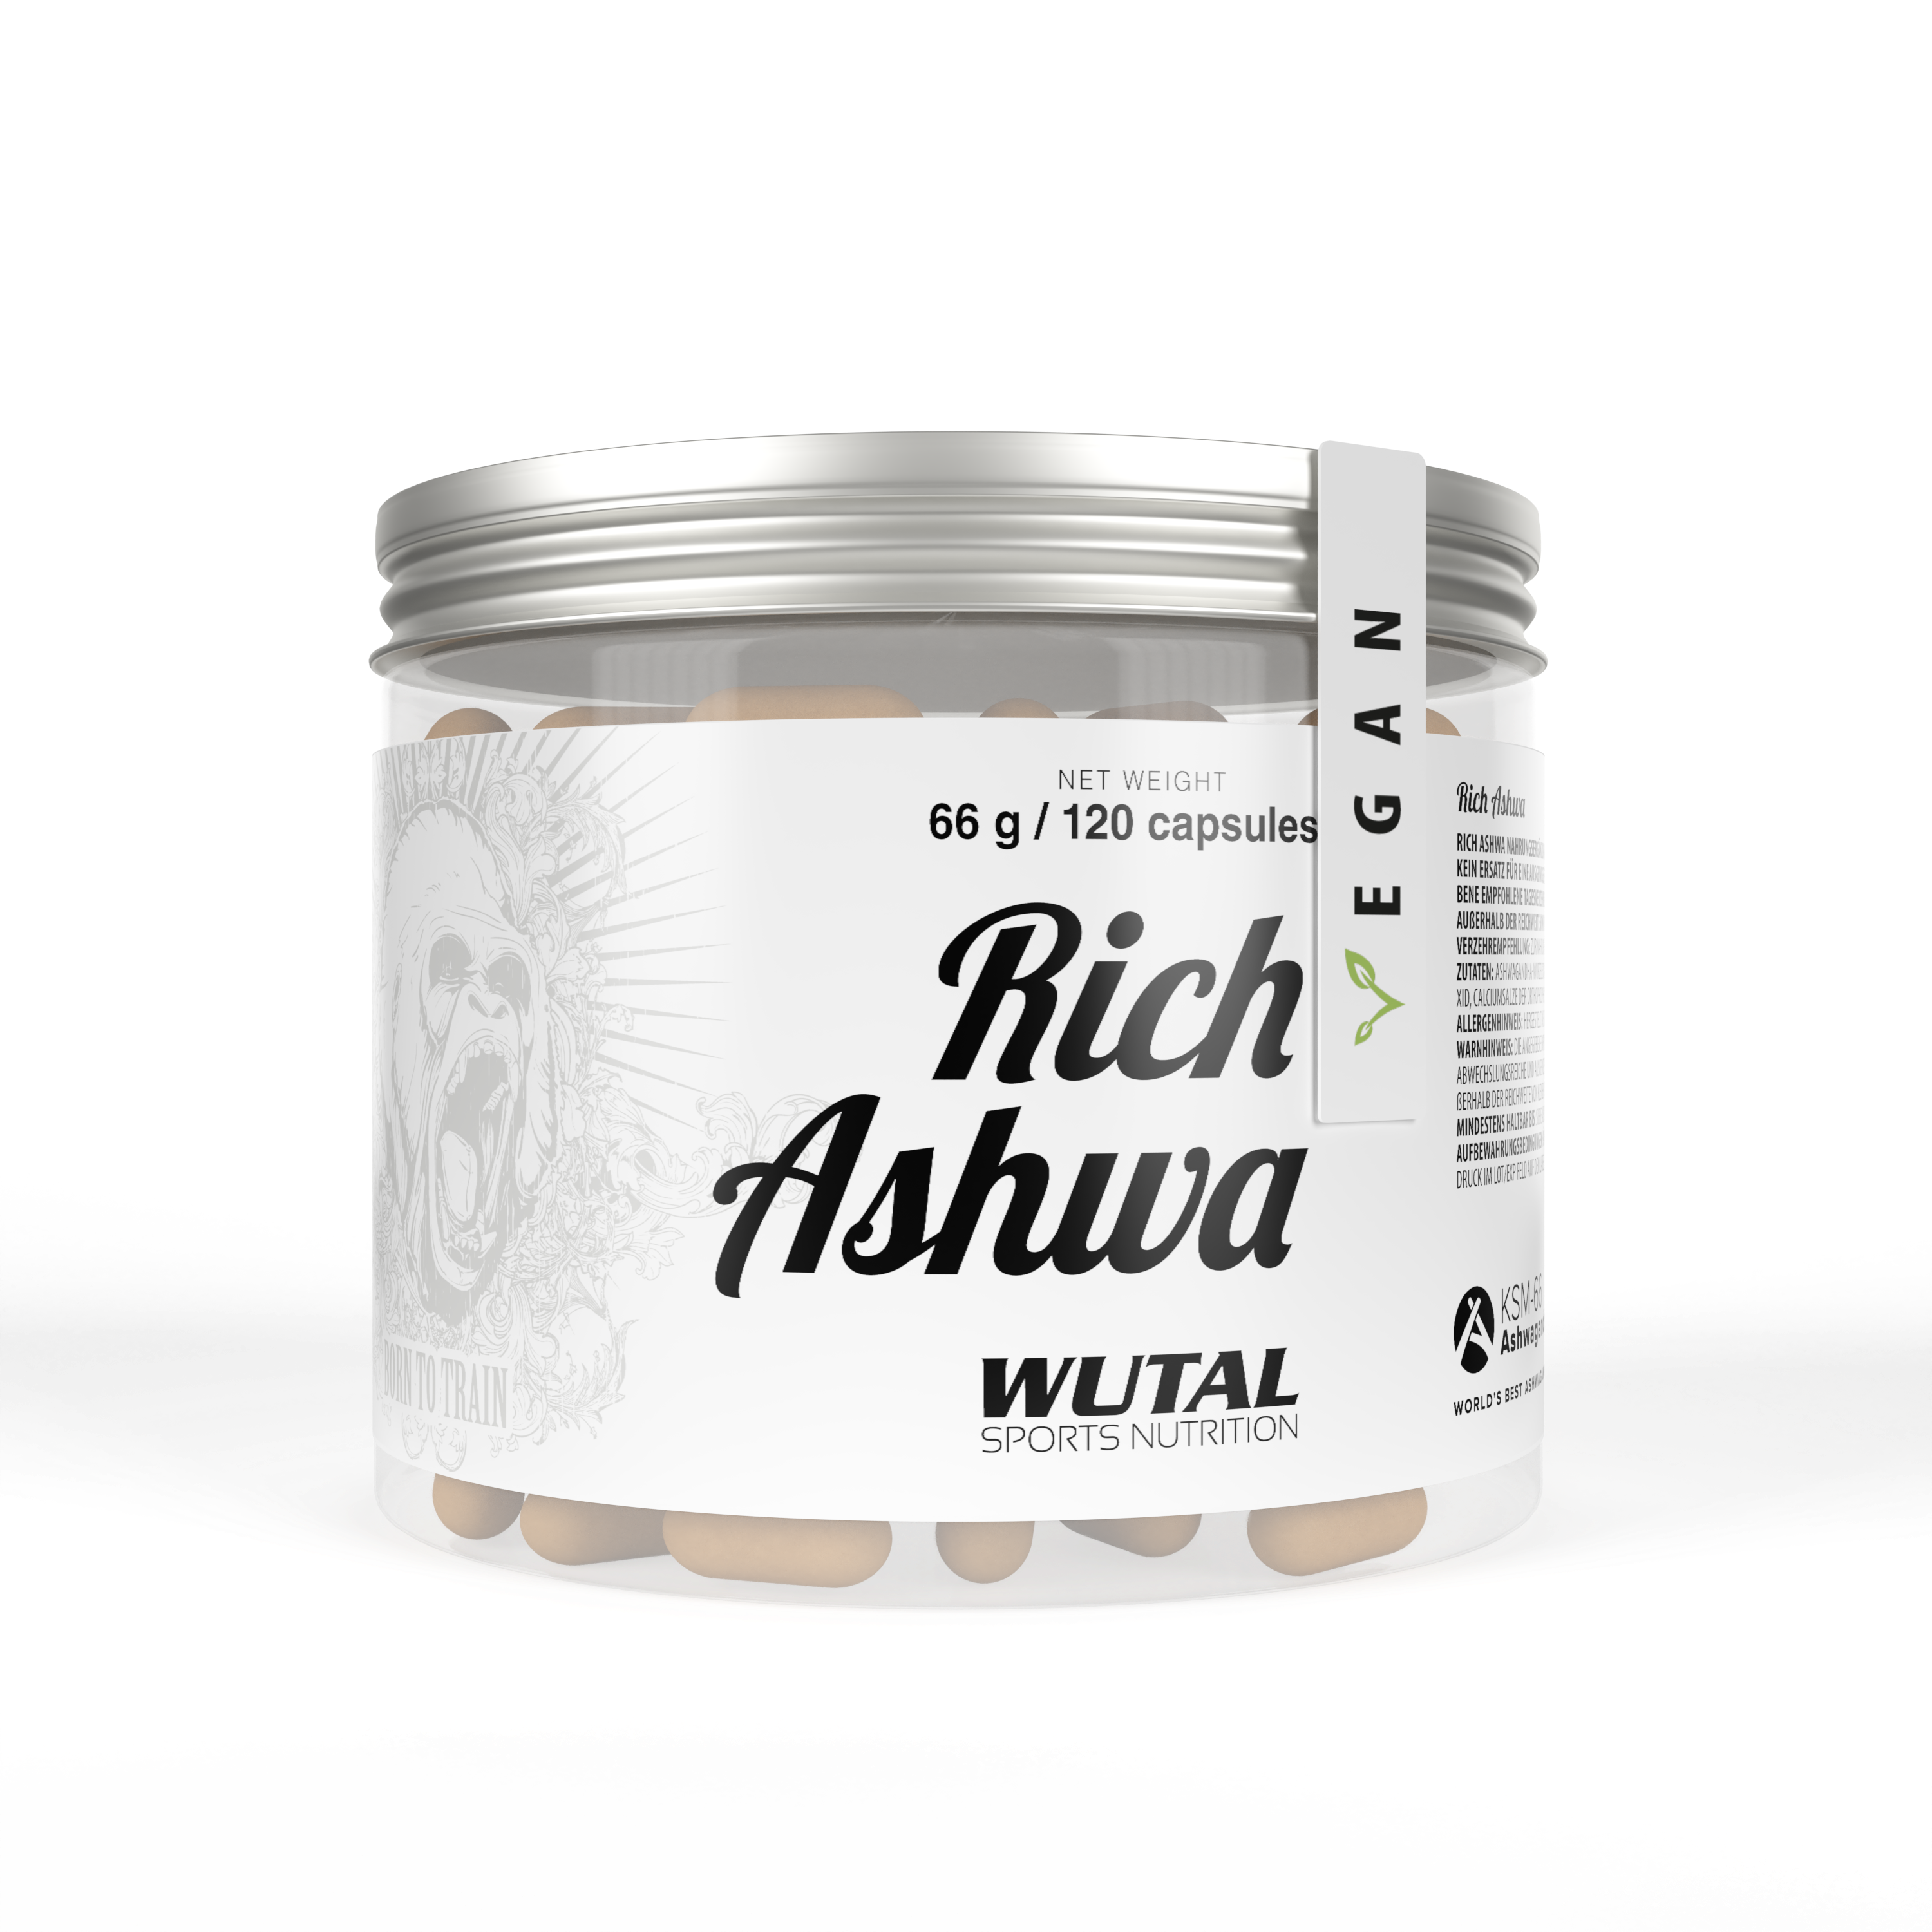 Rich Ashwa